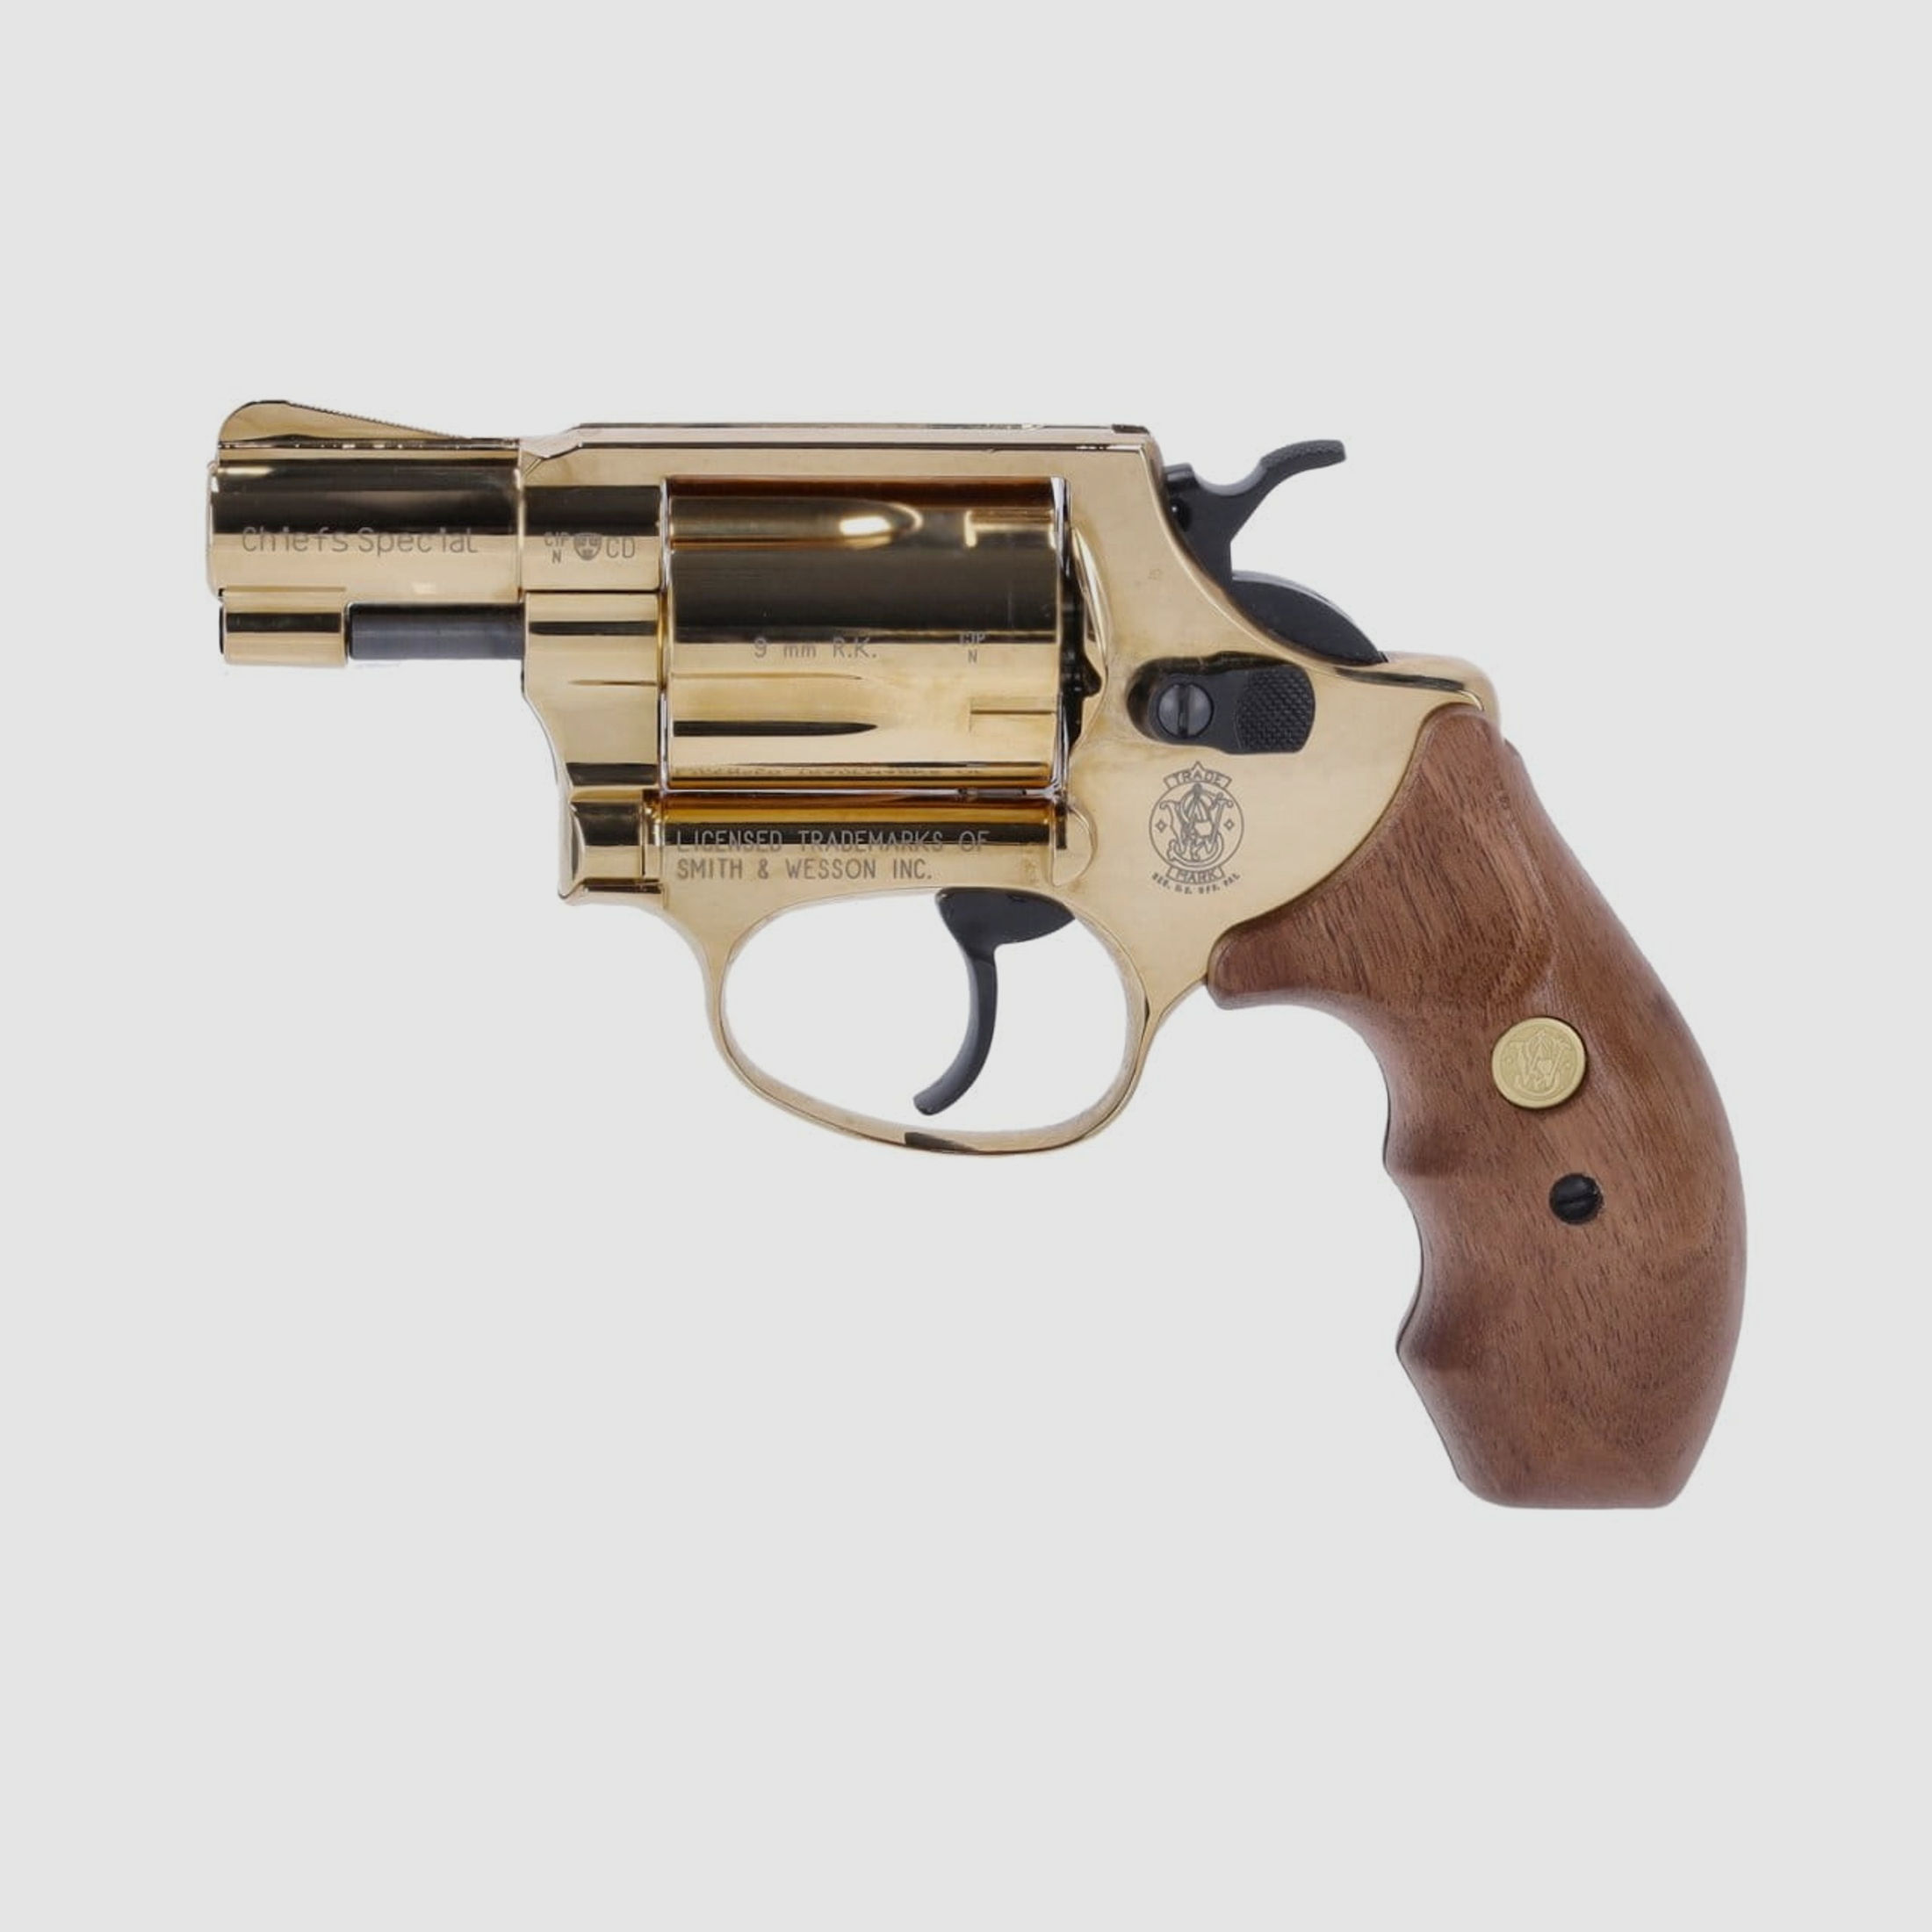 Smith & Wesson Chiefs Special Schreckschuss Revolver 9 mm R.K. gold